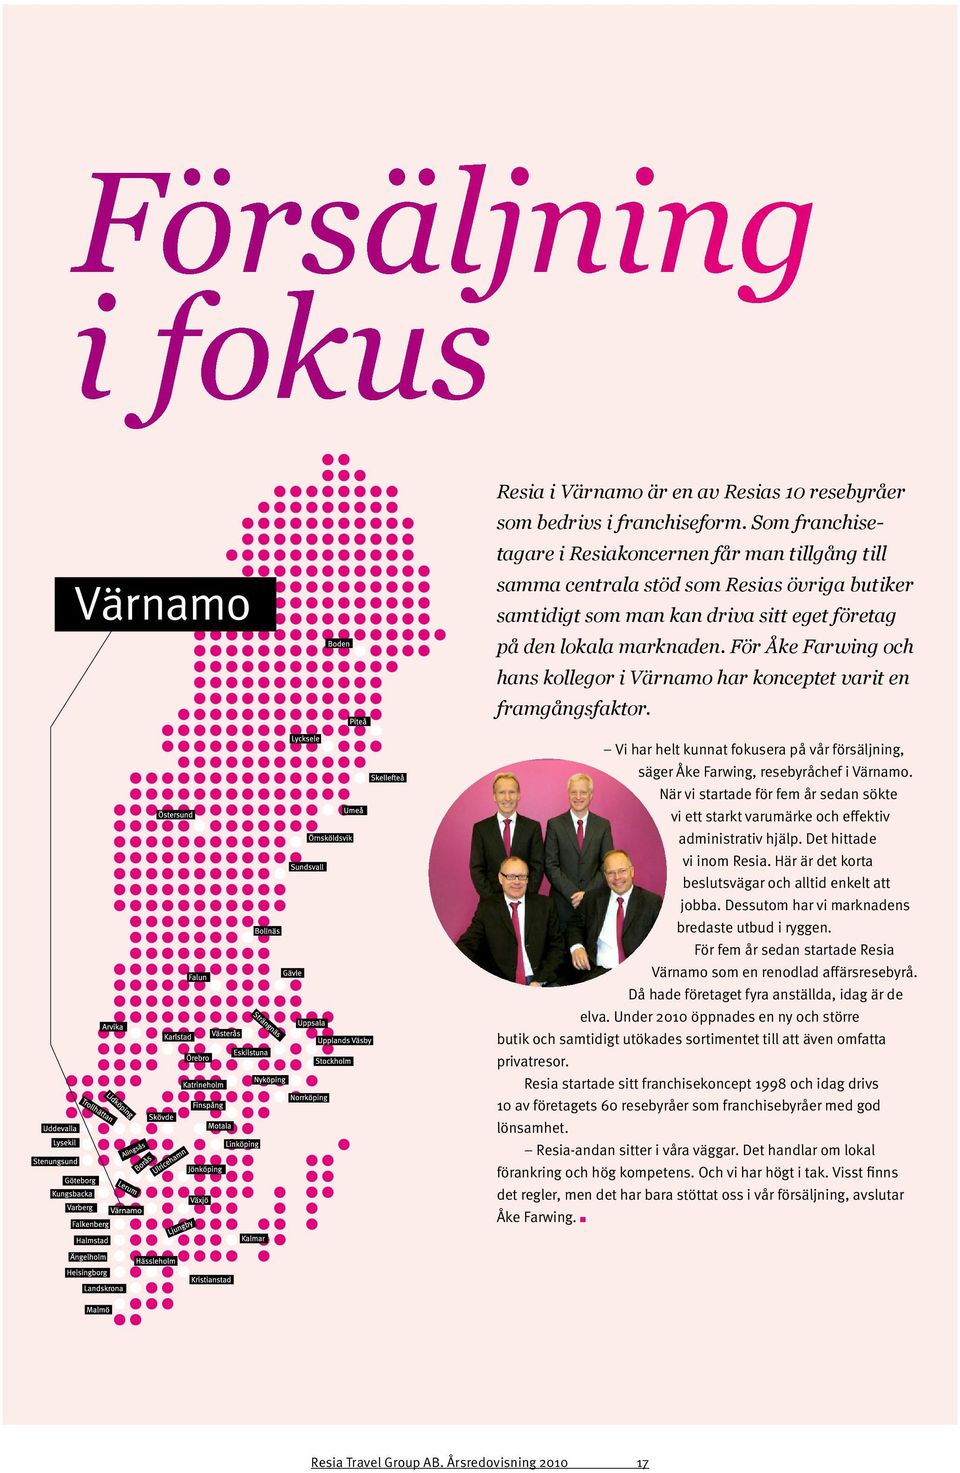 För Åke Farwing och hans kollegor i Värnamo har konceptet varit en framgångsfaktor. Vi har helt kunnat fokusera på vår försäljning, säger Åke Farwing, resebyråchef i Värnamo.